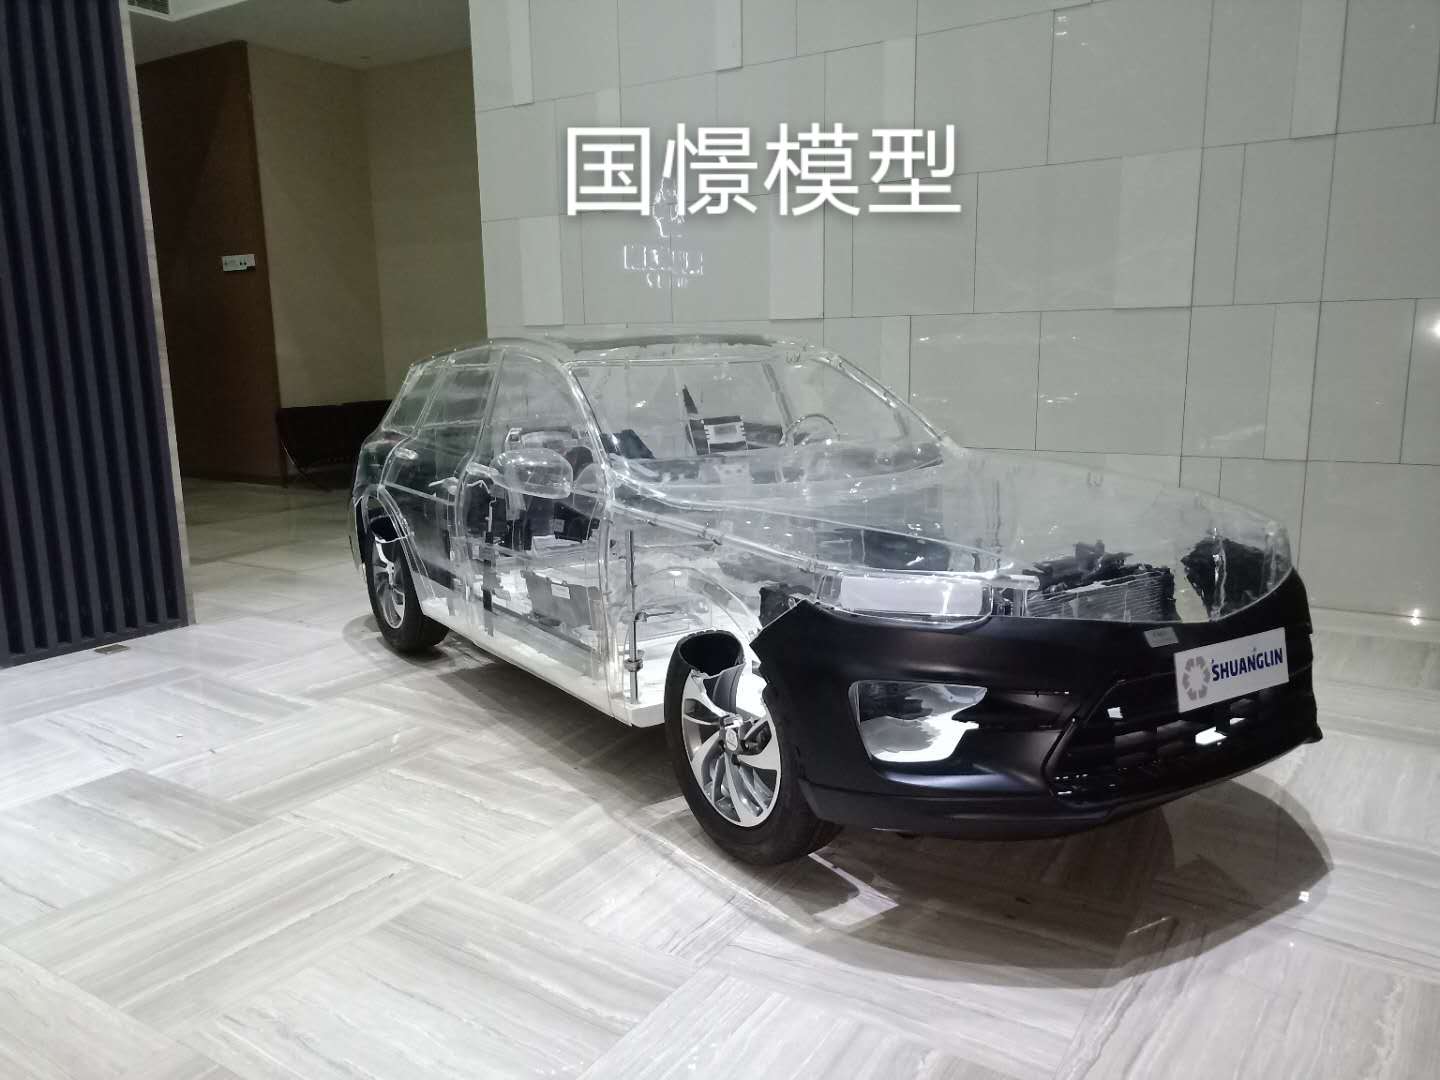 彭阳县透明车模型